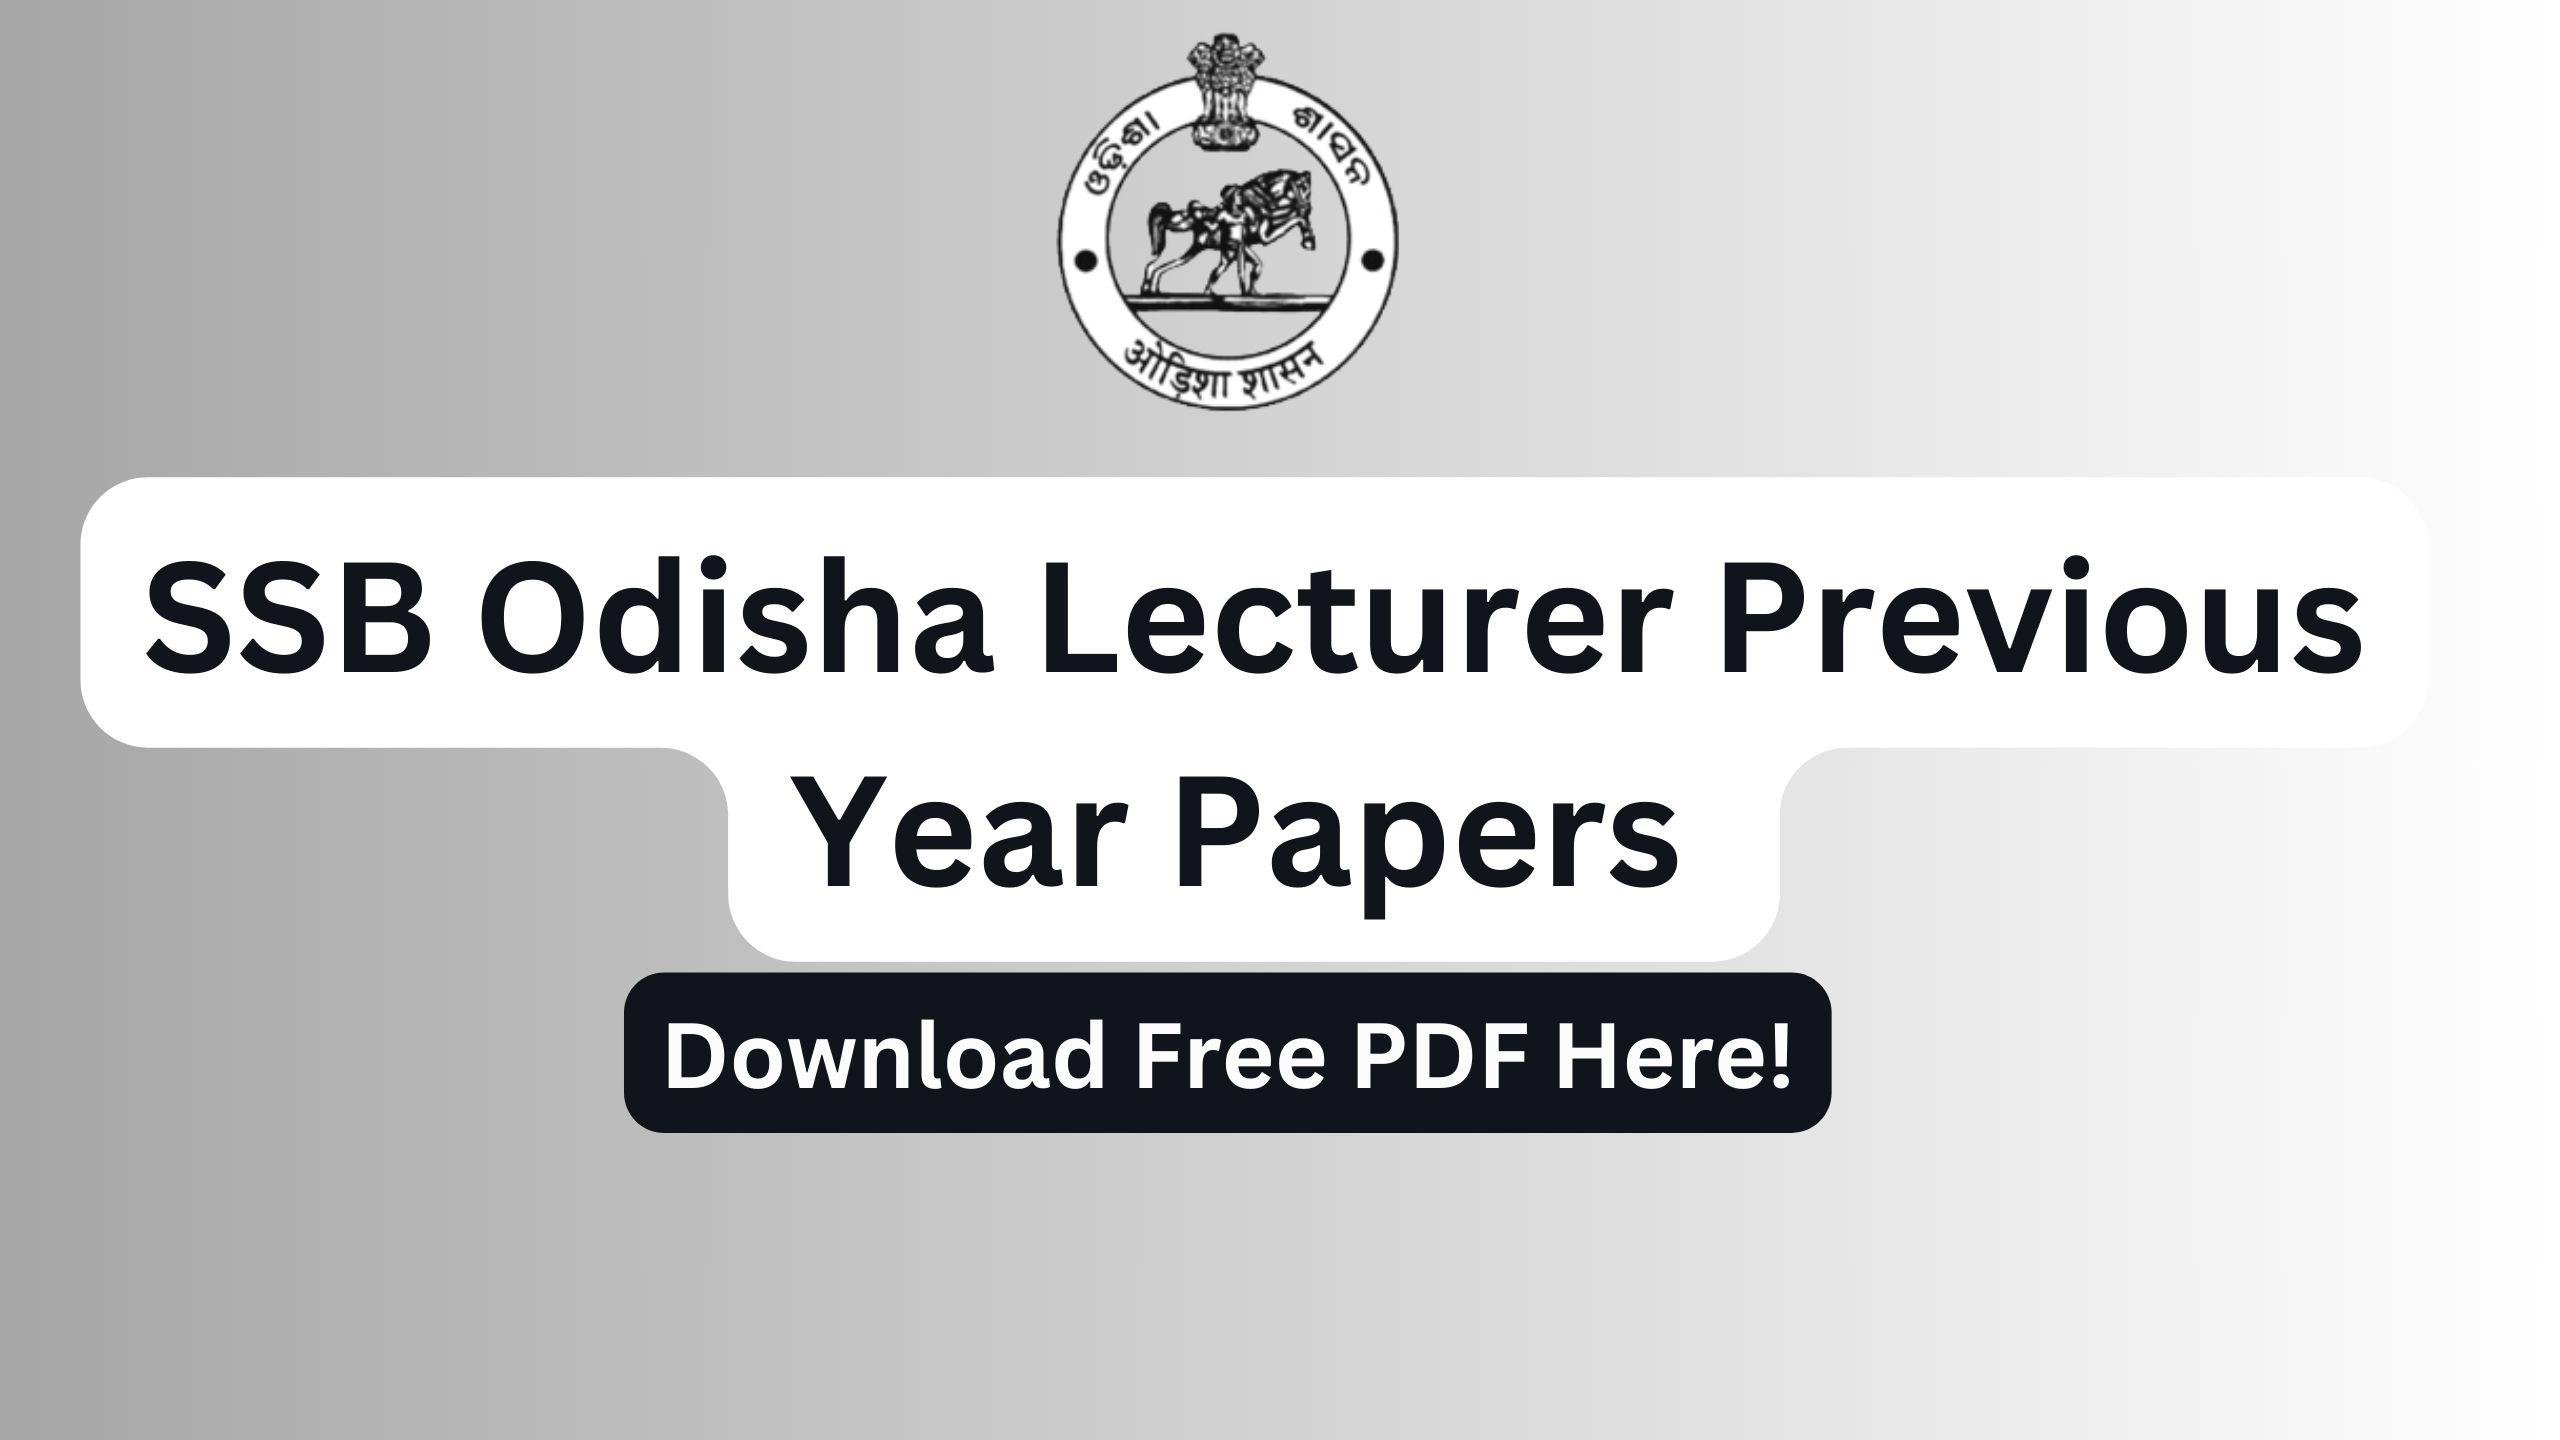 SSB odisha lecturer PYP